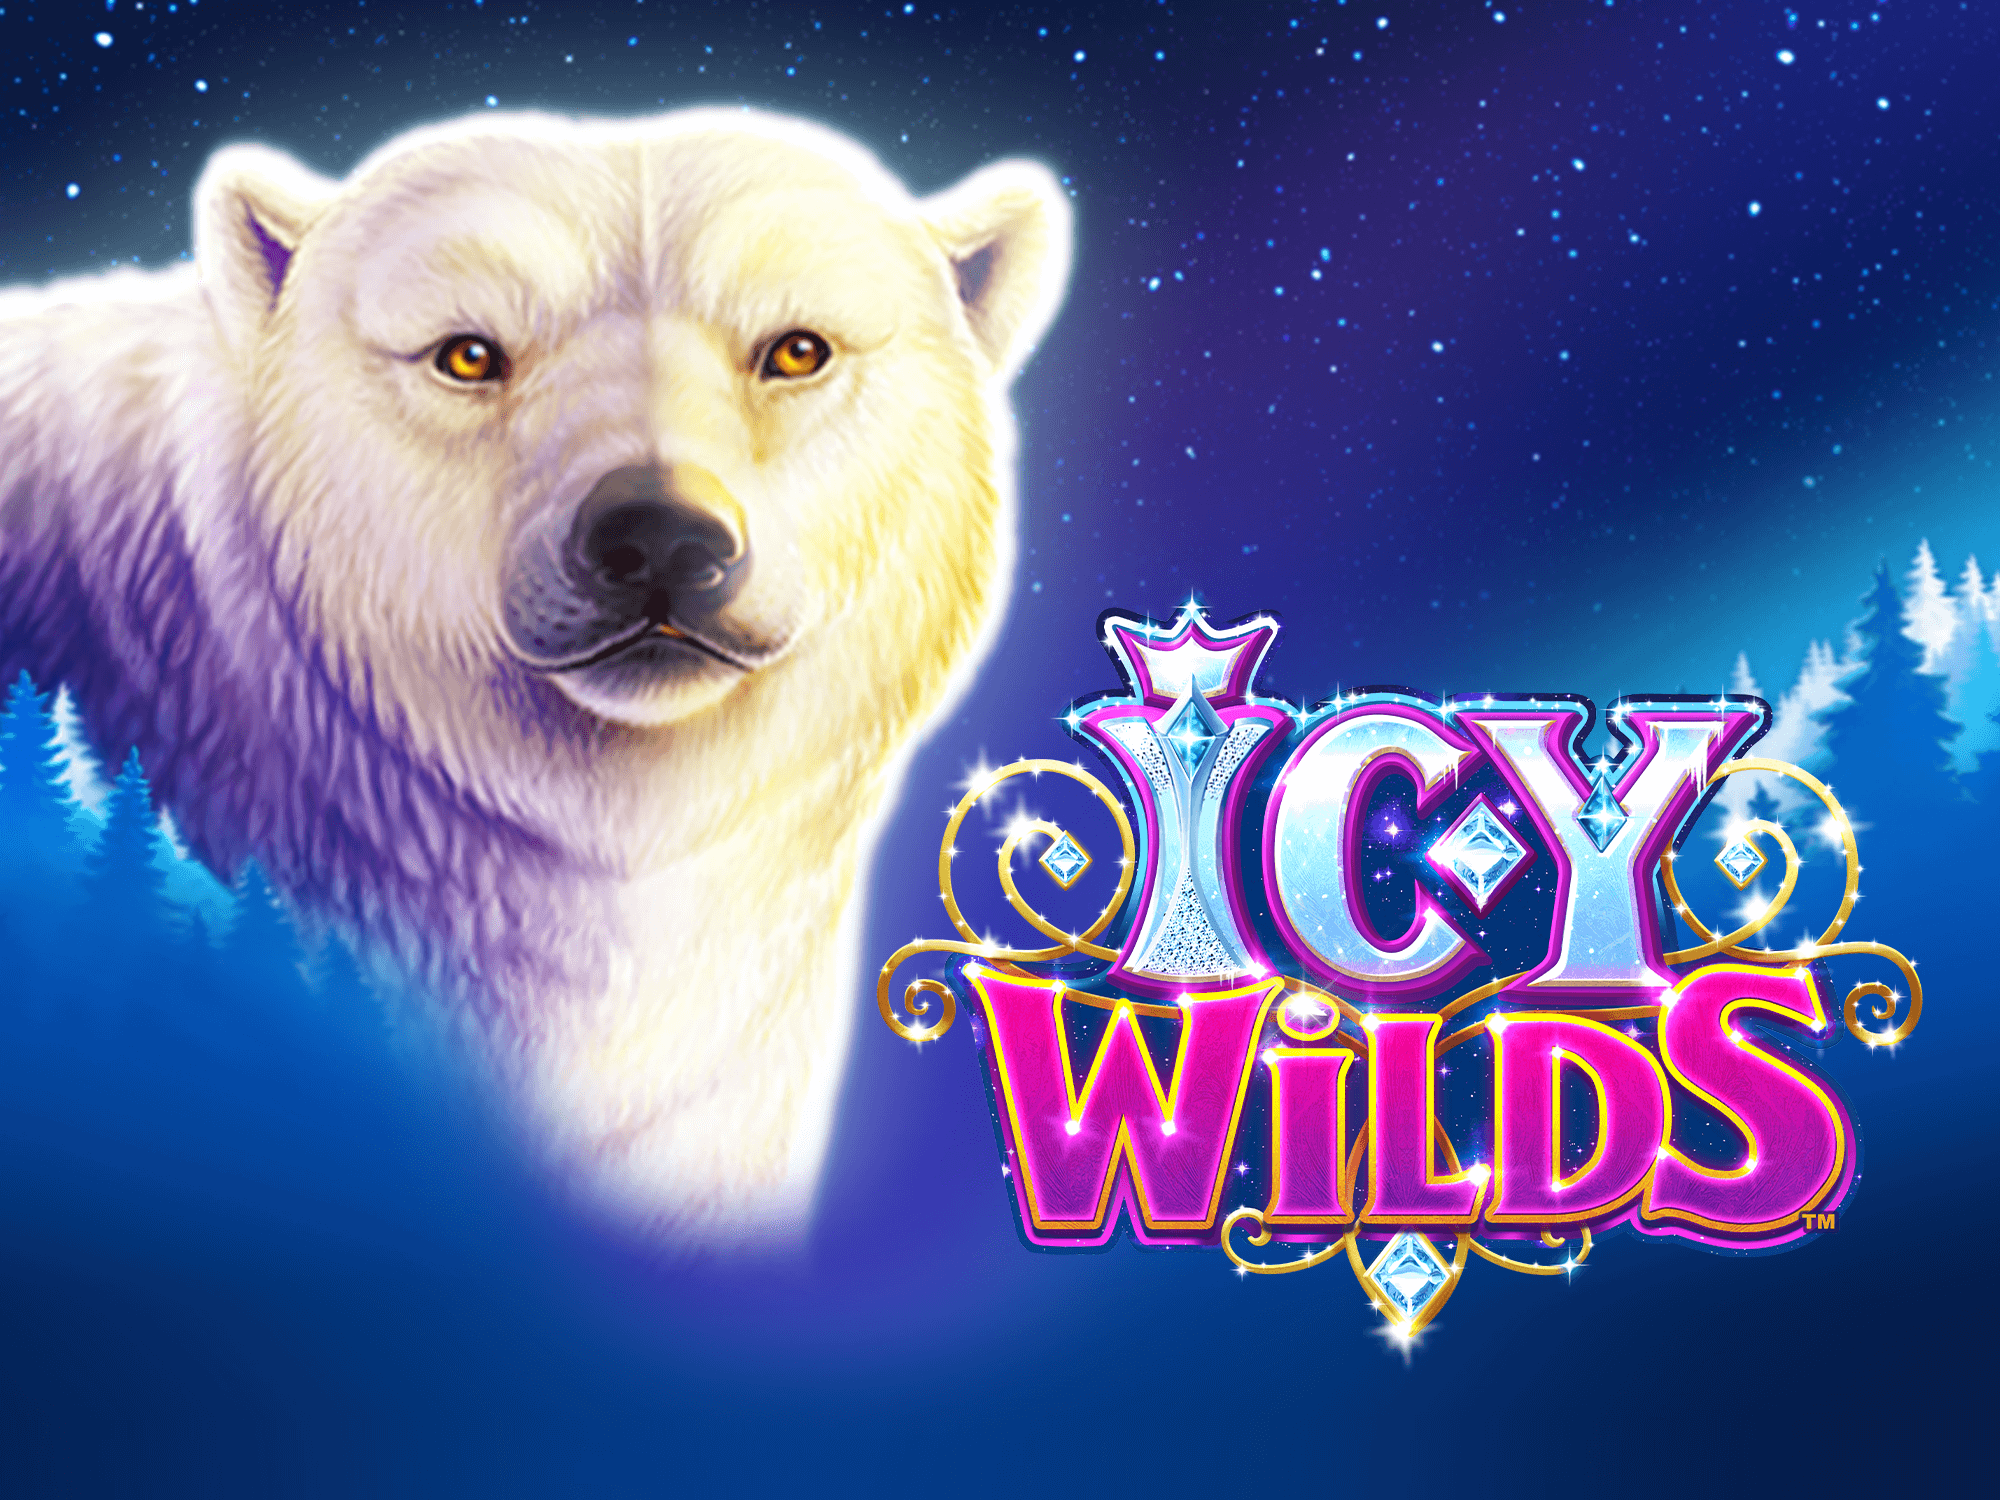 Icy wilds slot machine free online games